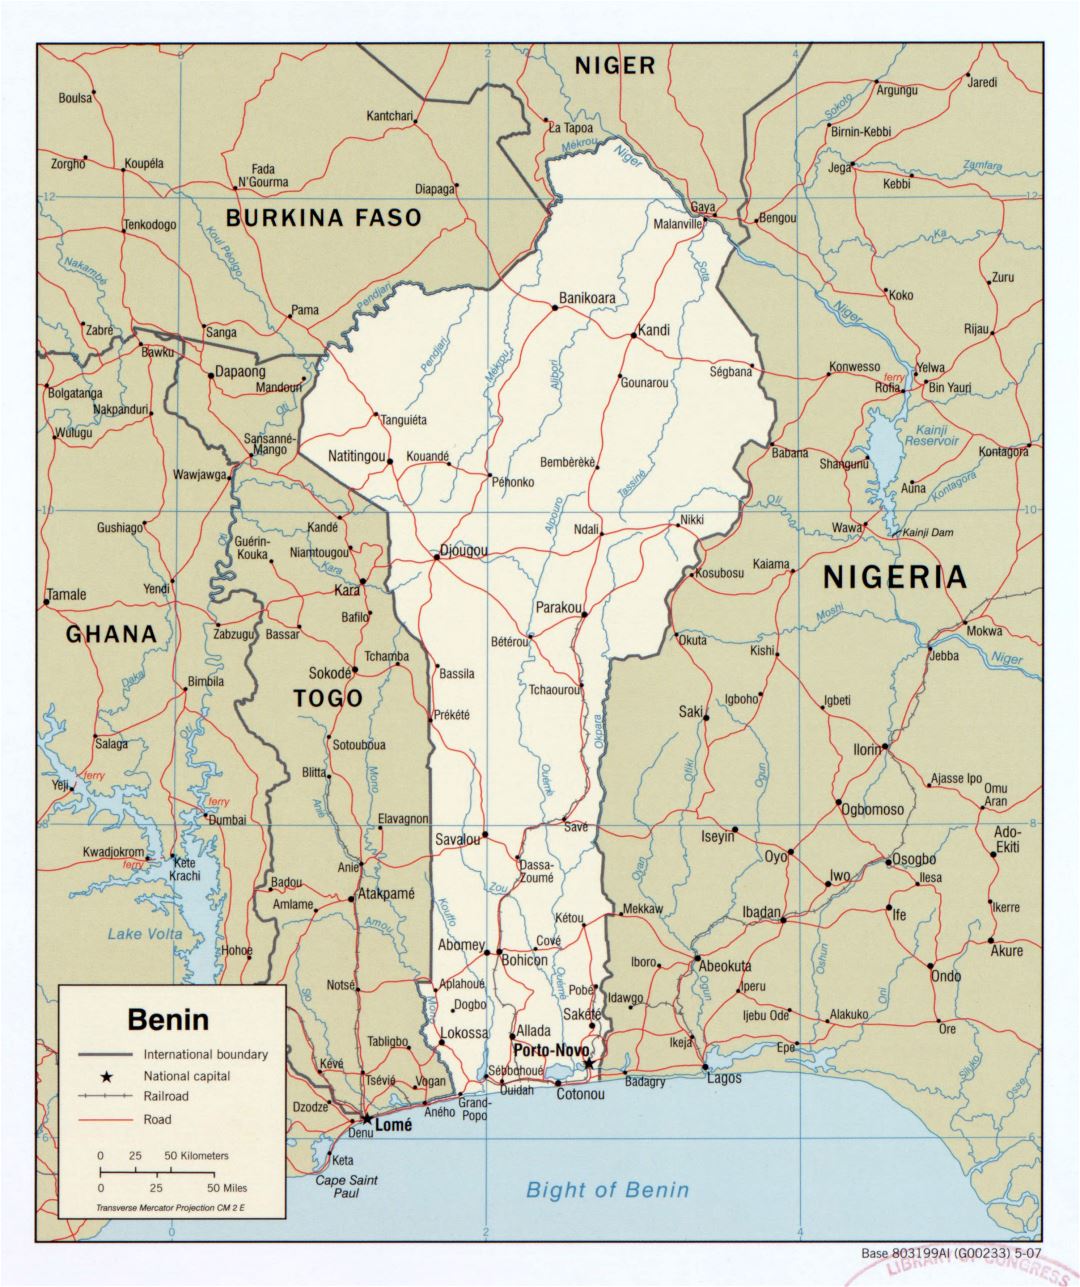 Крупномасштабная детальная политическая карта Бенина с дорогами, железными дорогами и городами - 2007